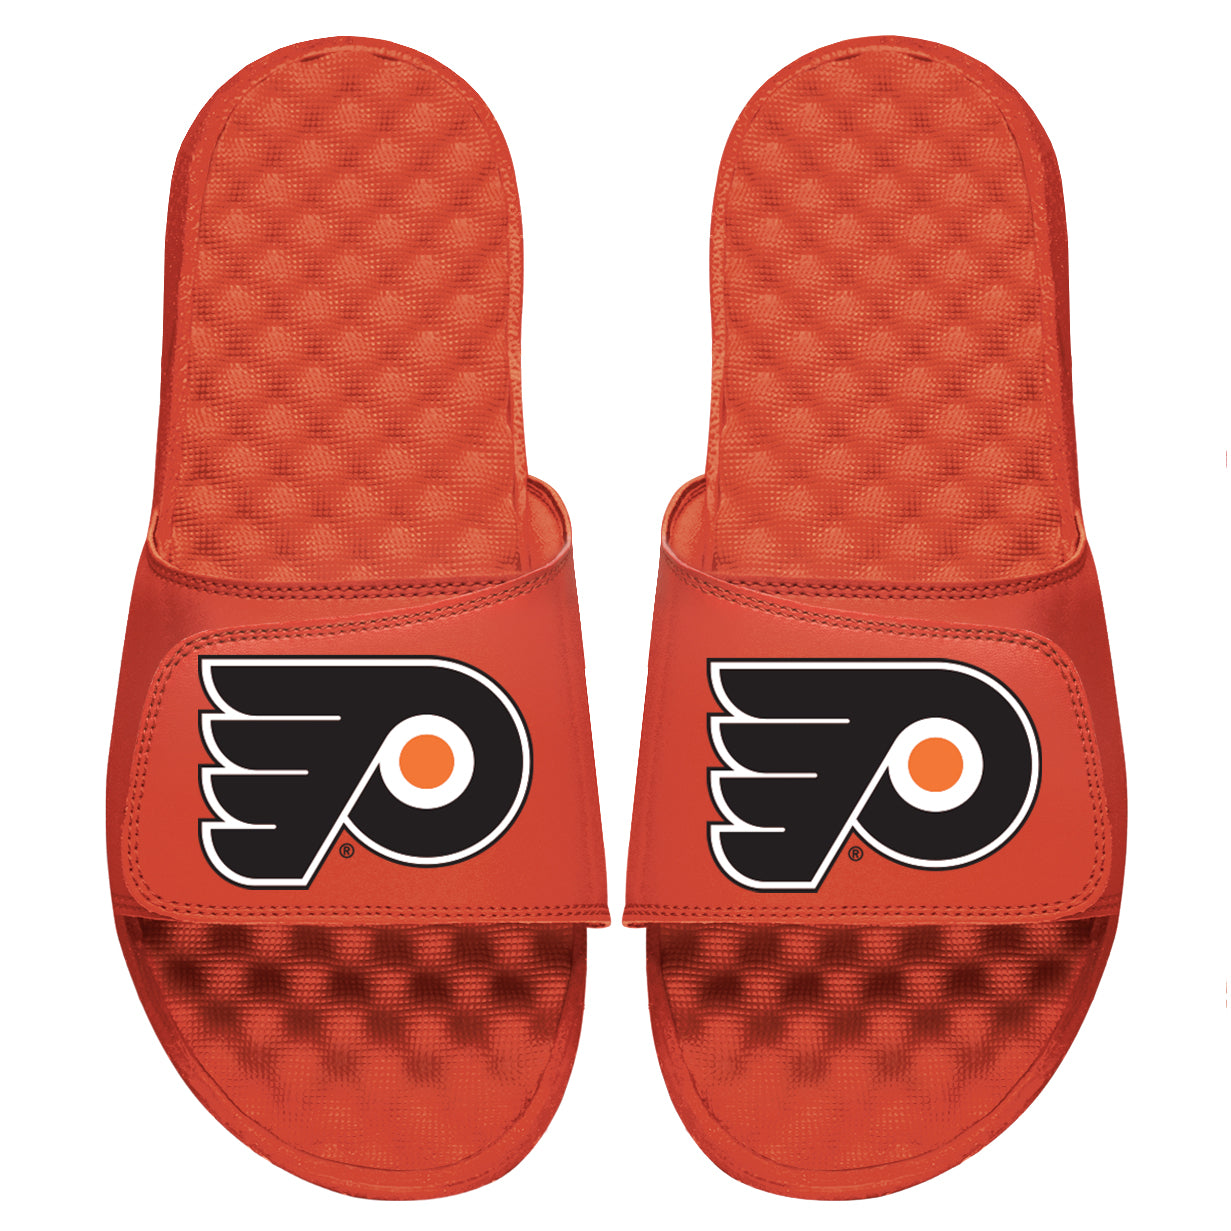 Philadelphia Flyers Primary Orange Slides